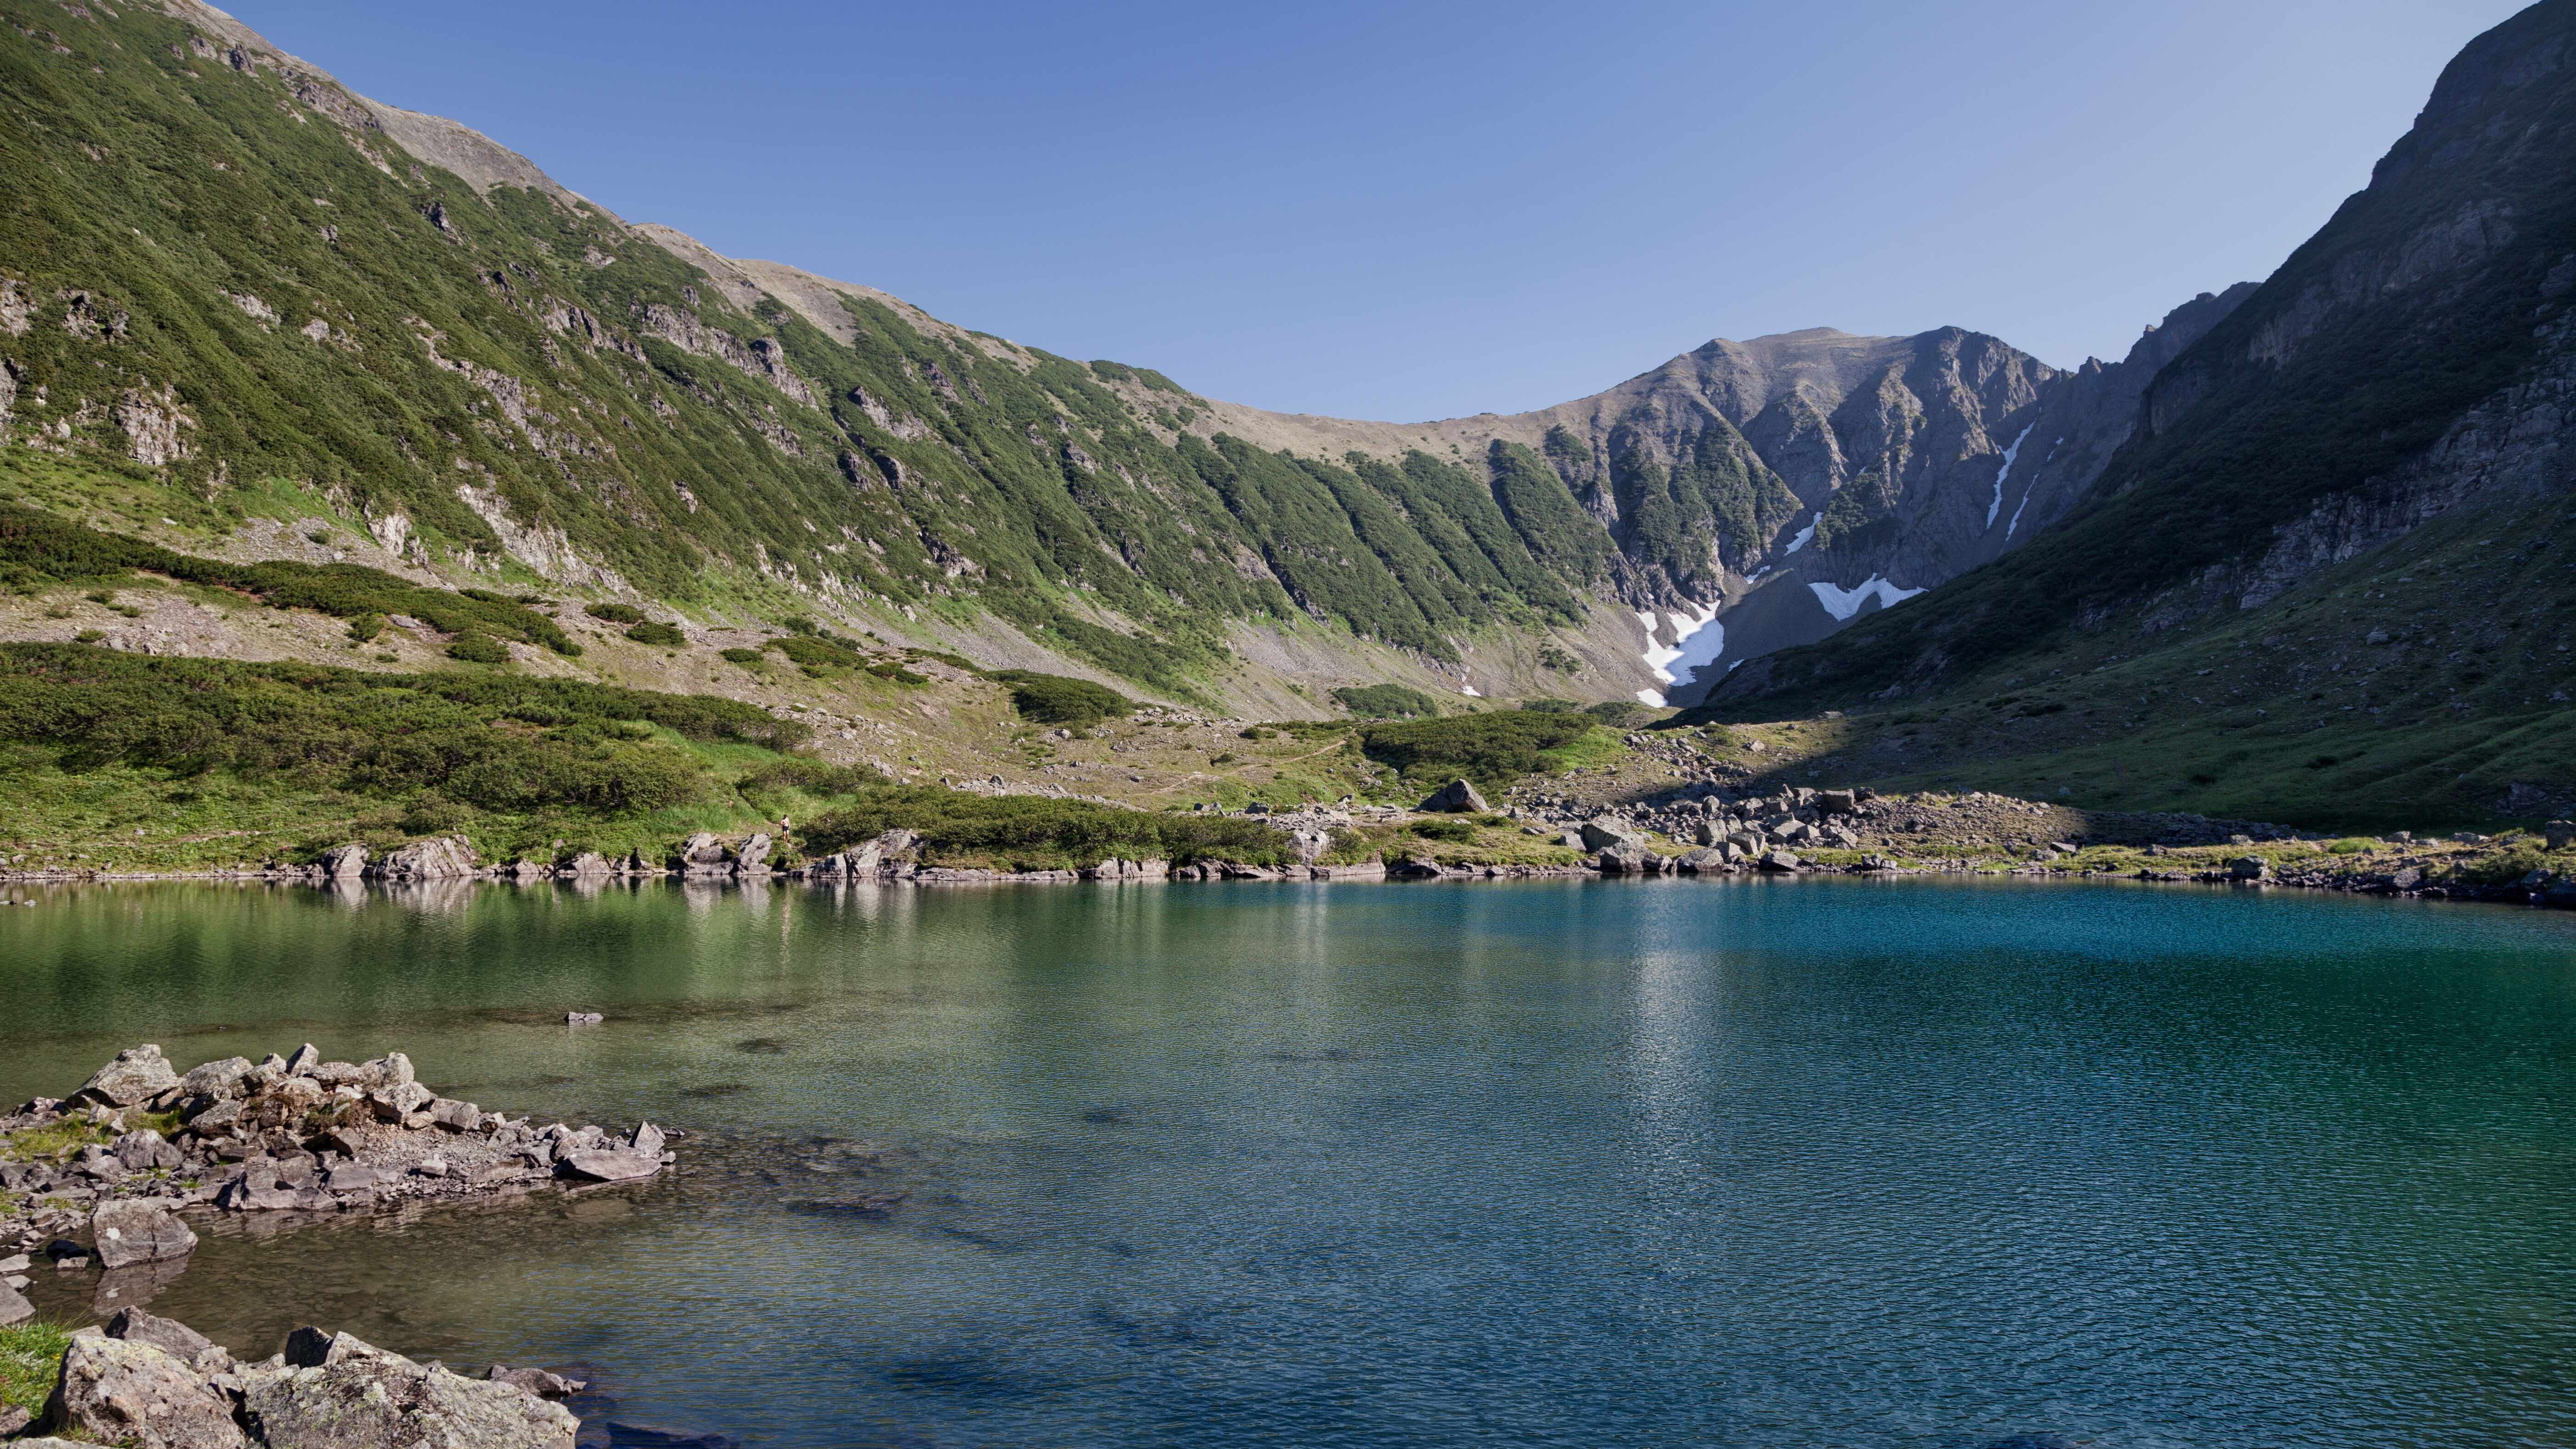 kamchatka mountain lake 5k, water, scenics - nature, beauty in nature